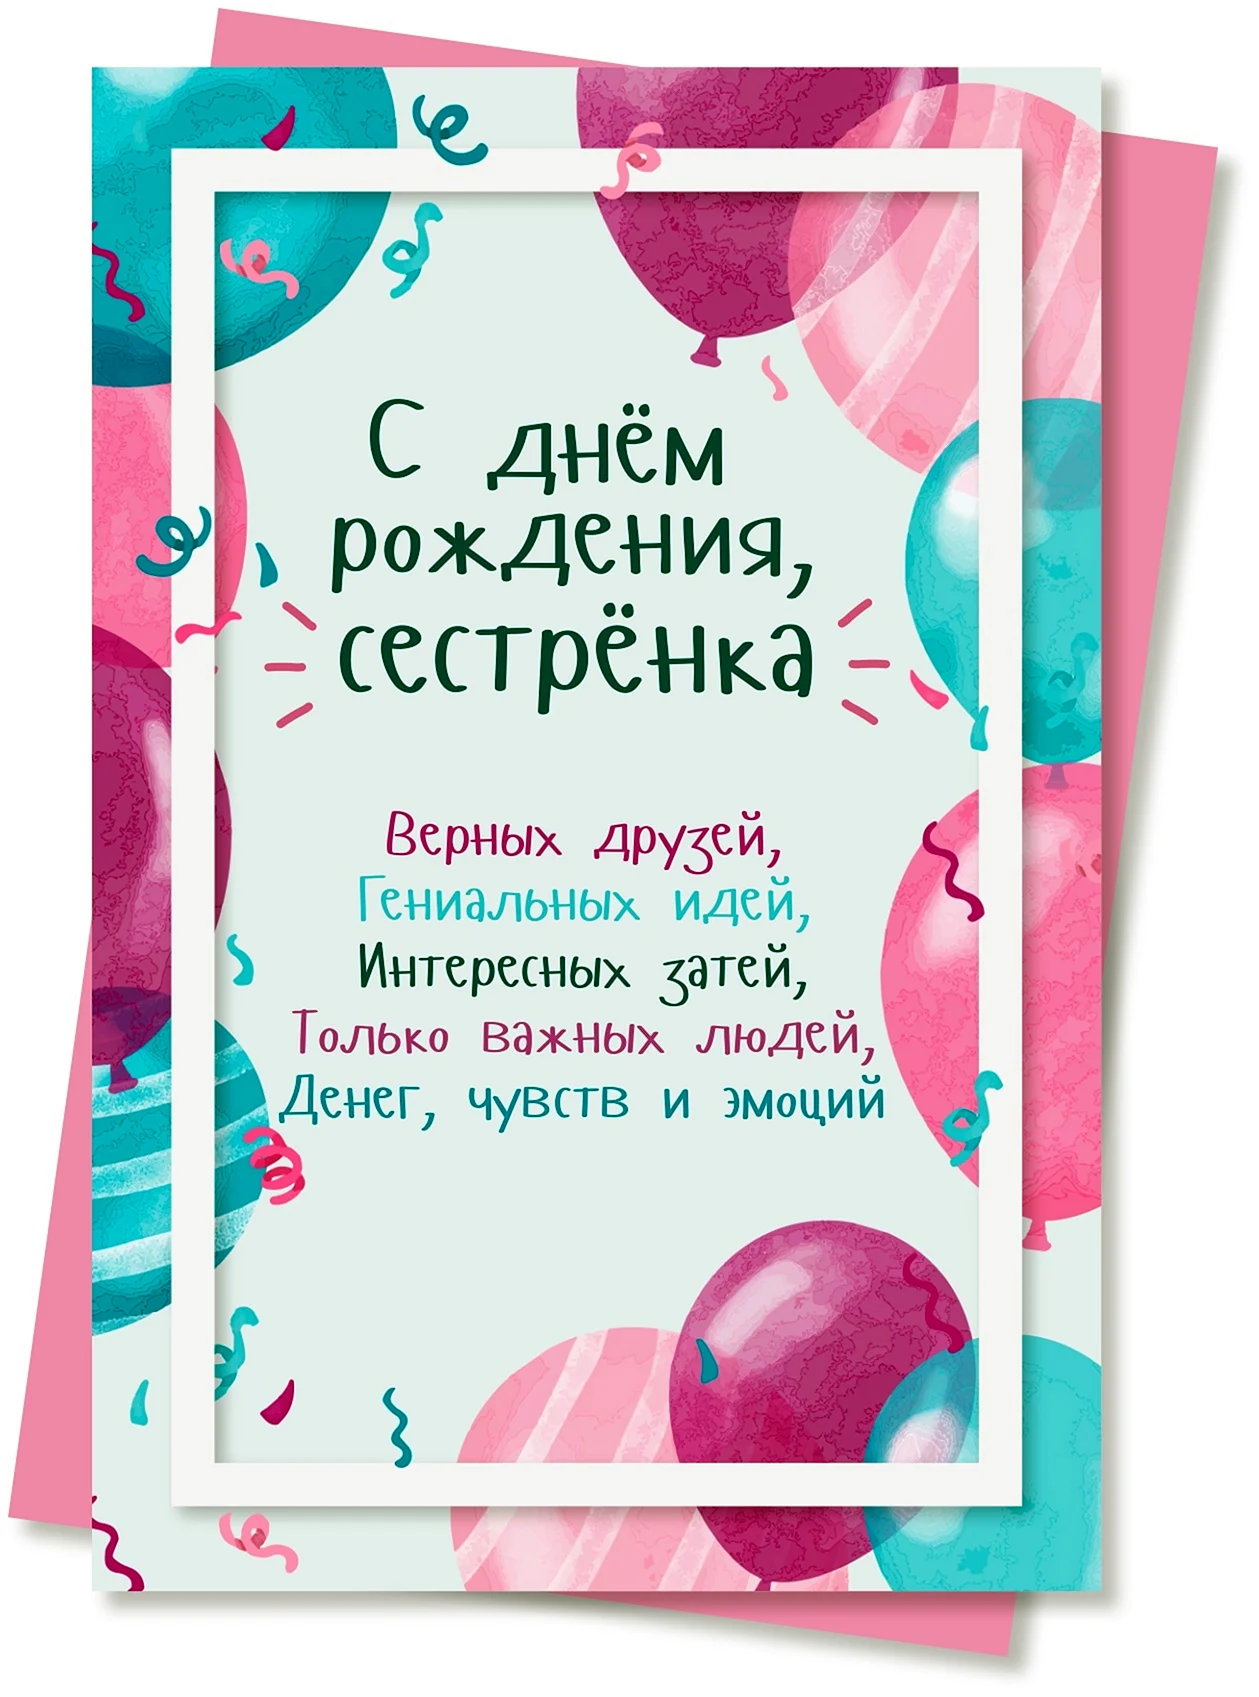 Открытки с днем рождения сестре от сестренки на татарском языке - фото и картинки уральские-газоны.рф